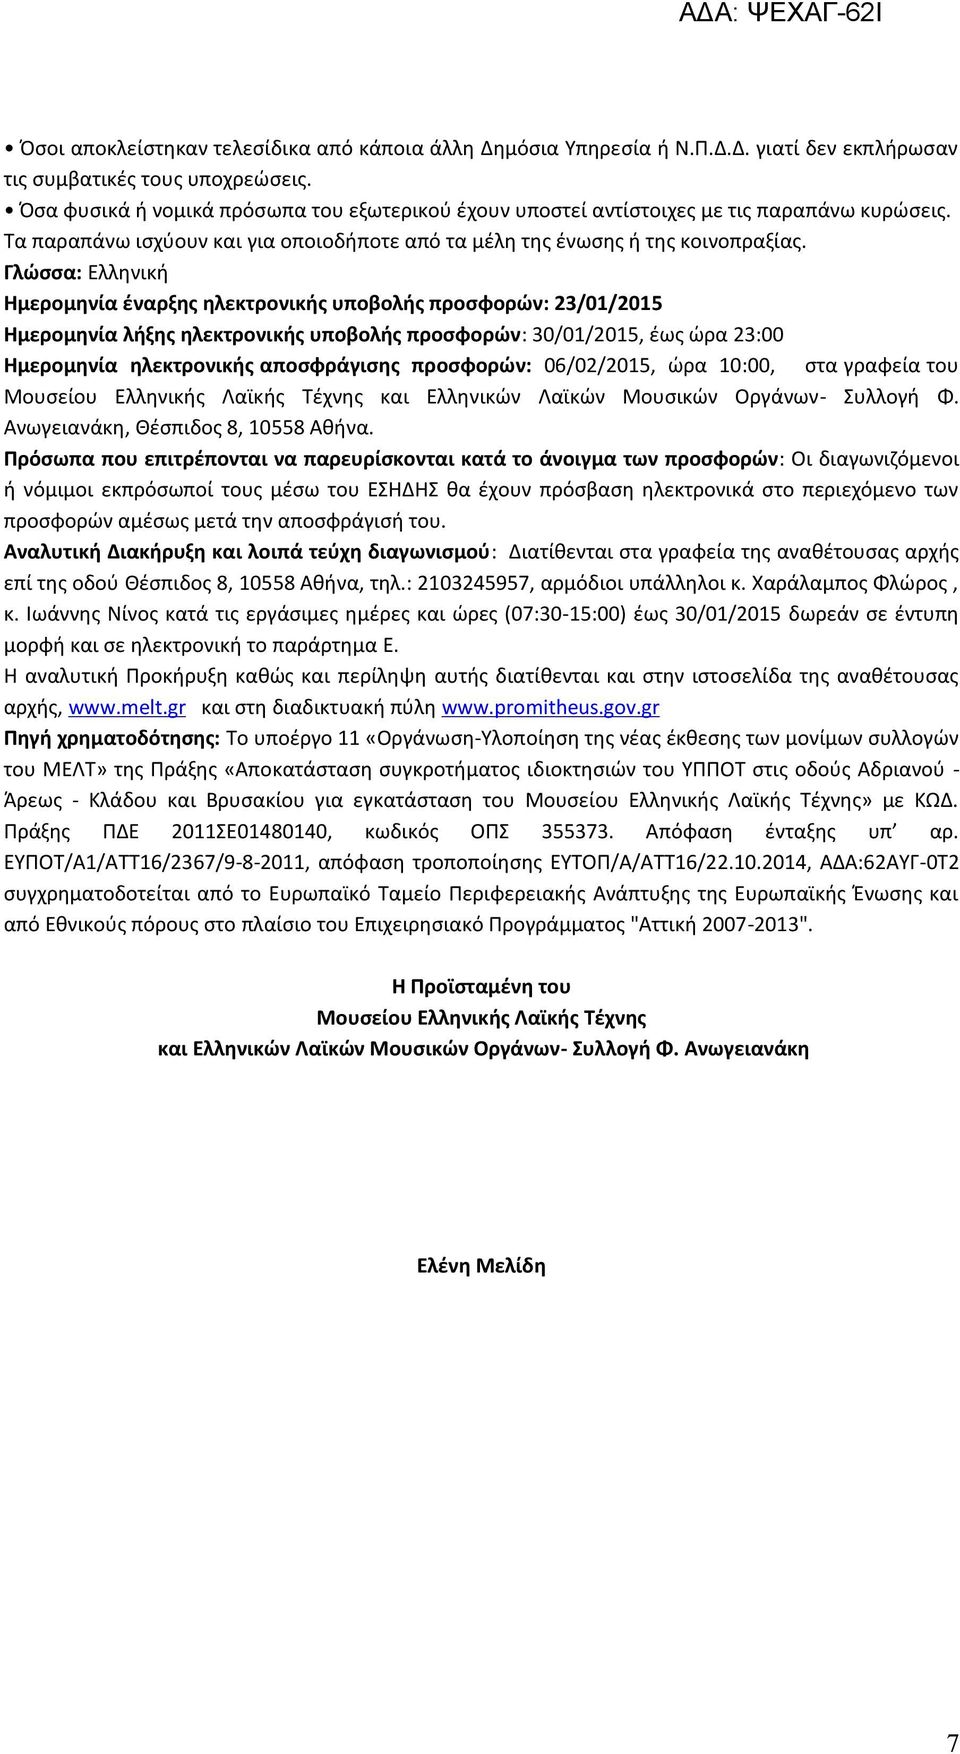 Γλώσσα: Ελληνική Ημερομηνία έναρξης ηλεκτρονικής υποβολής προσφορών: 23/01/2015 Ημερομηνία λήξης ηλεκτρονικής υποβολής προσφορών: 30/01/2015, έως ώρα 23:00 Ημερομηνία ηλεκτρονικής αποσφράγισης